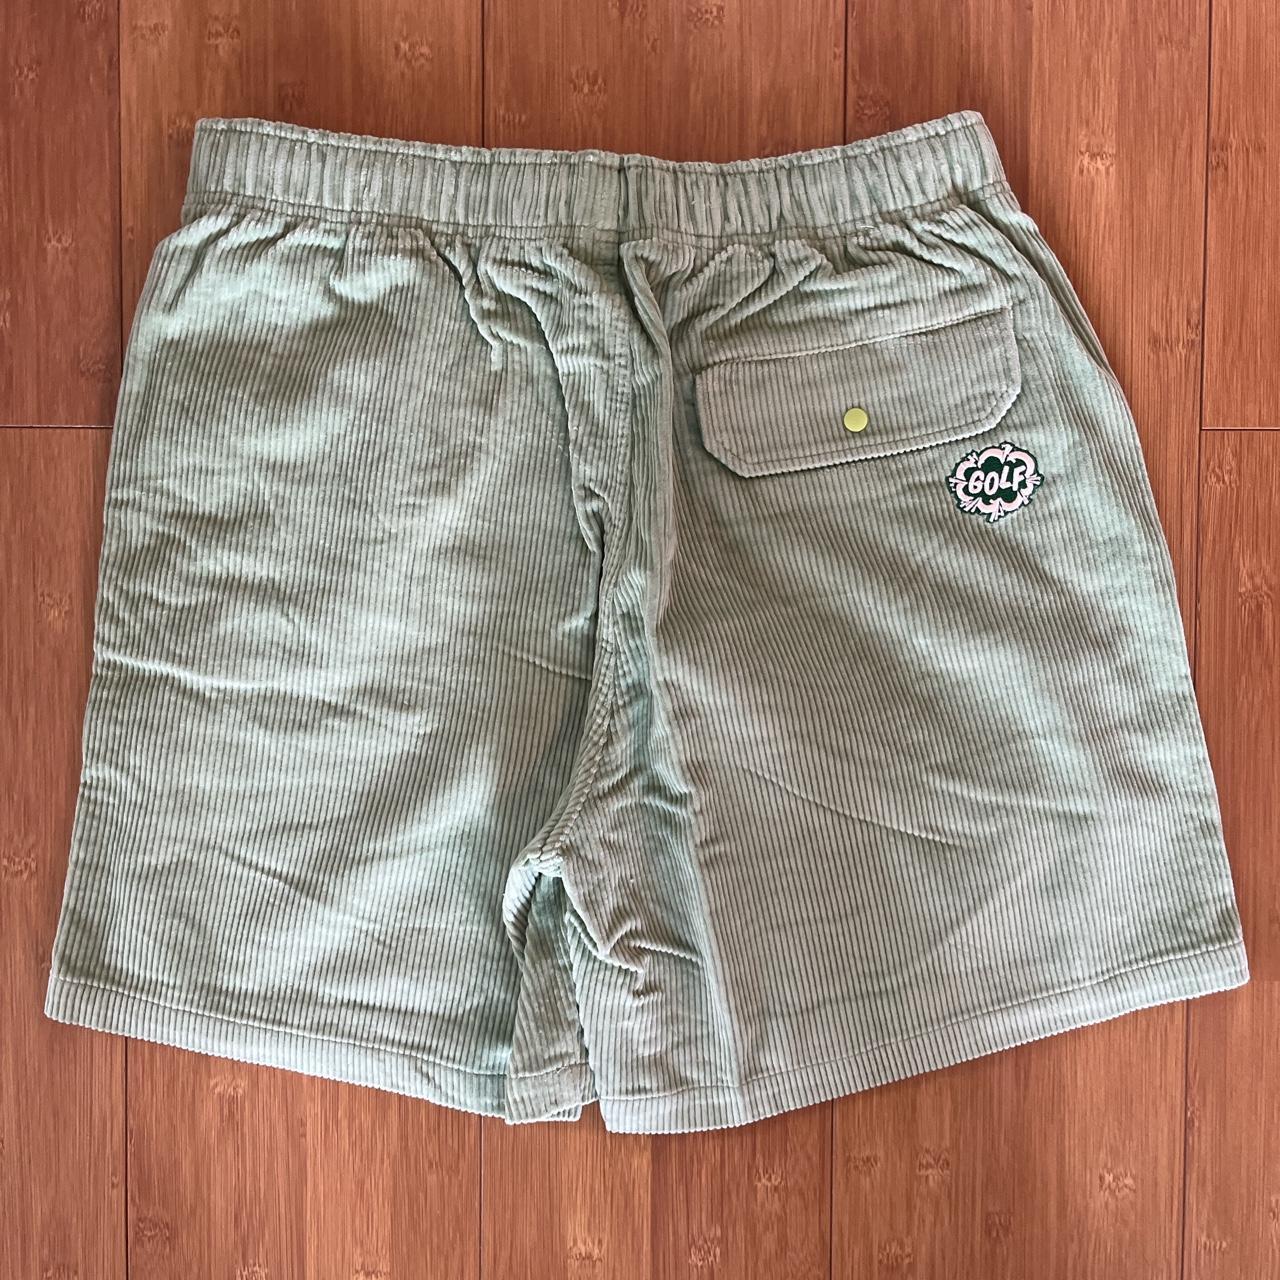 Golf Wang Men's Green Shorts | Depop